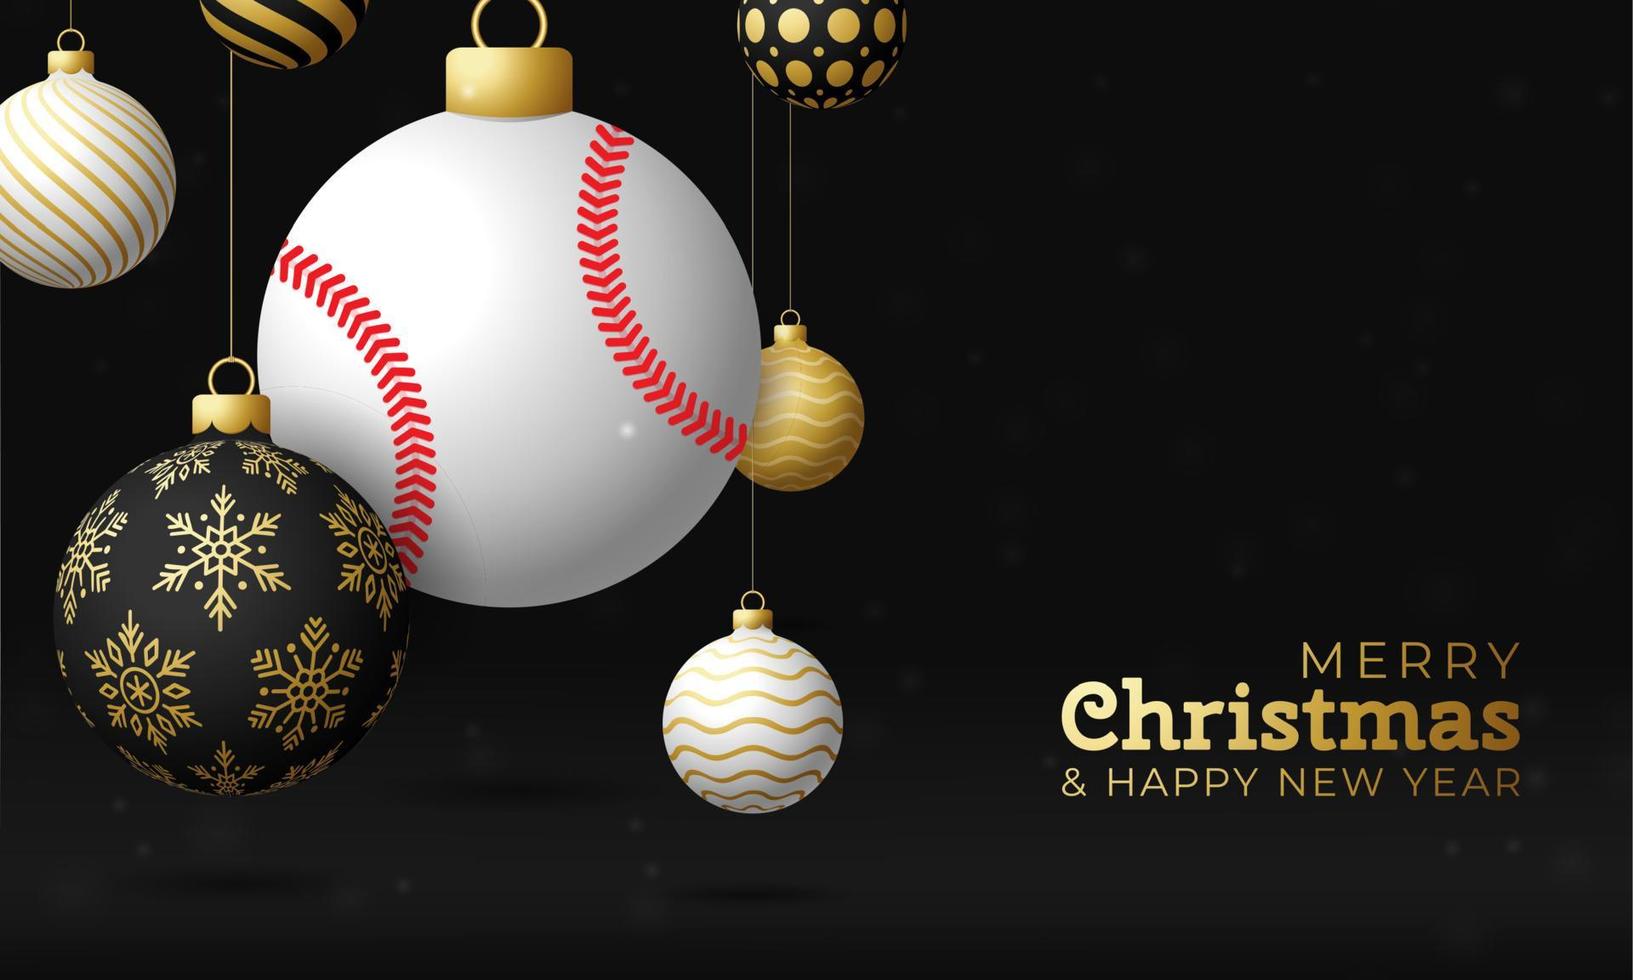 tarjeta de navidad de béisbol. Feliz Navidad tarjeta de felicitación deportiva. colgar de una pelota de béisbol de hilo como una bola de Navidad y adorno dorado sobre fondo negro horizontal. Ilustración de vector de deporte.